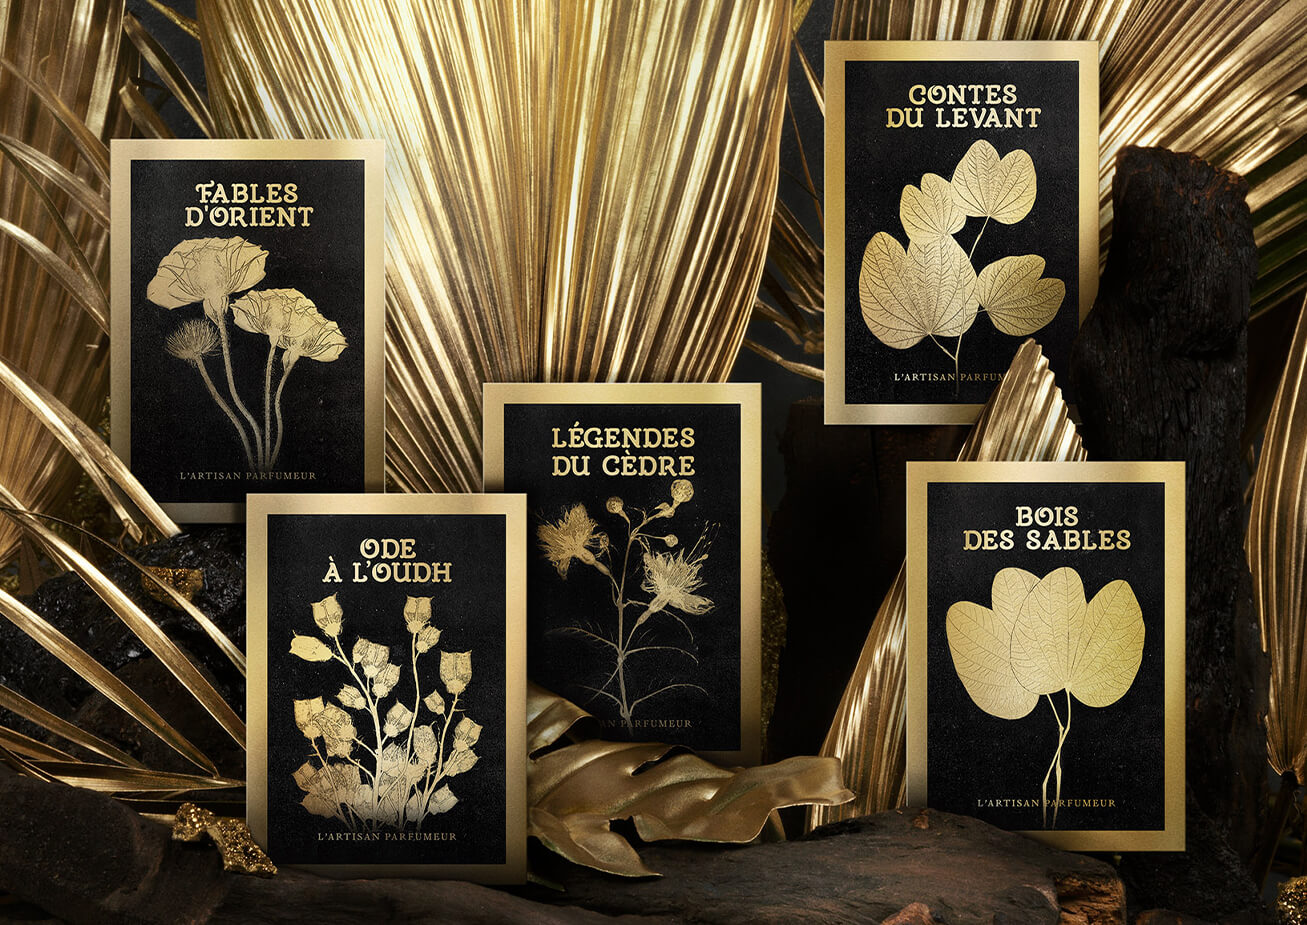 L'Orient collection’s fragrances